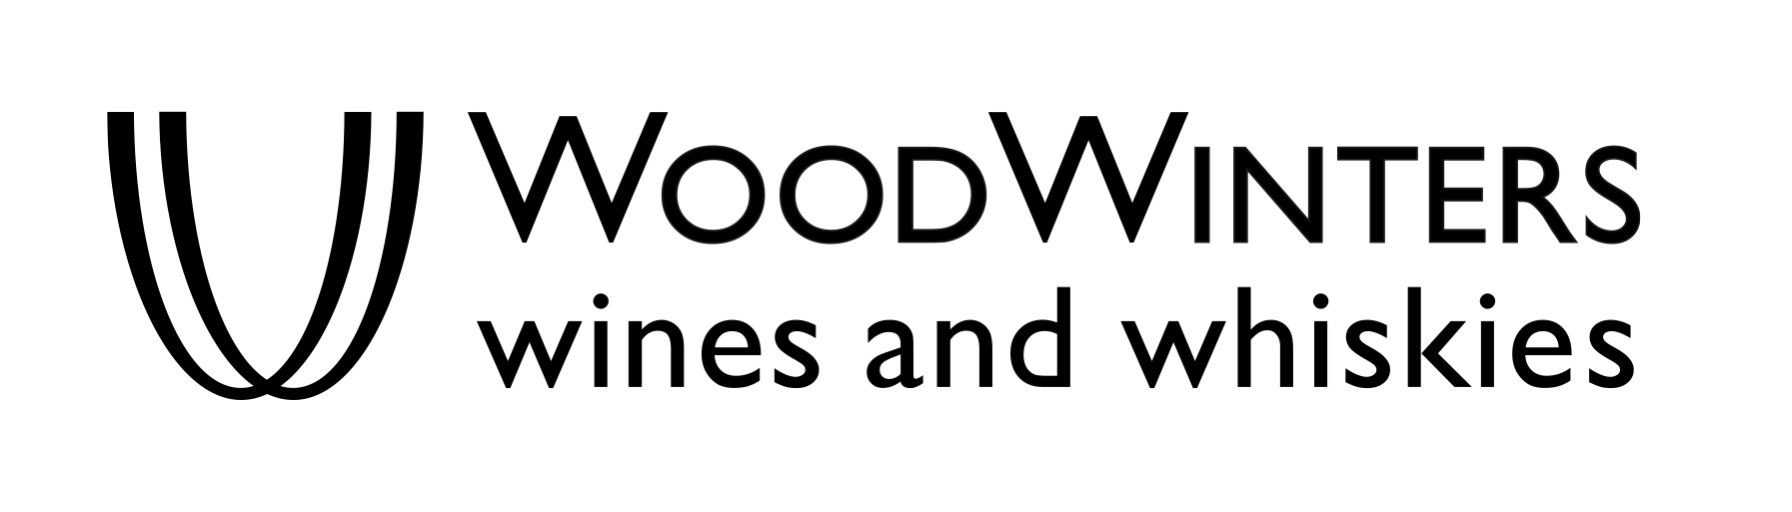 WoodWinters